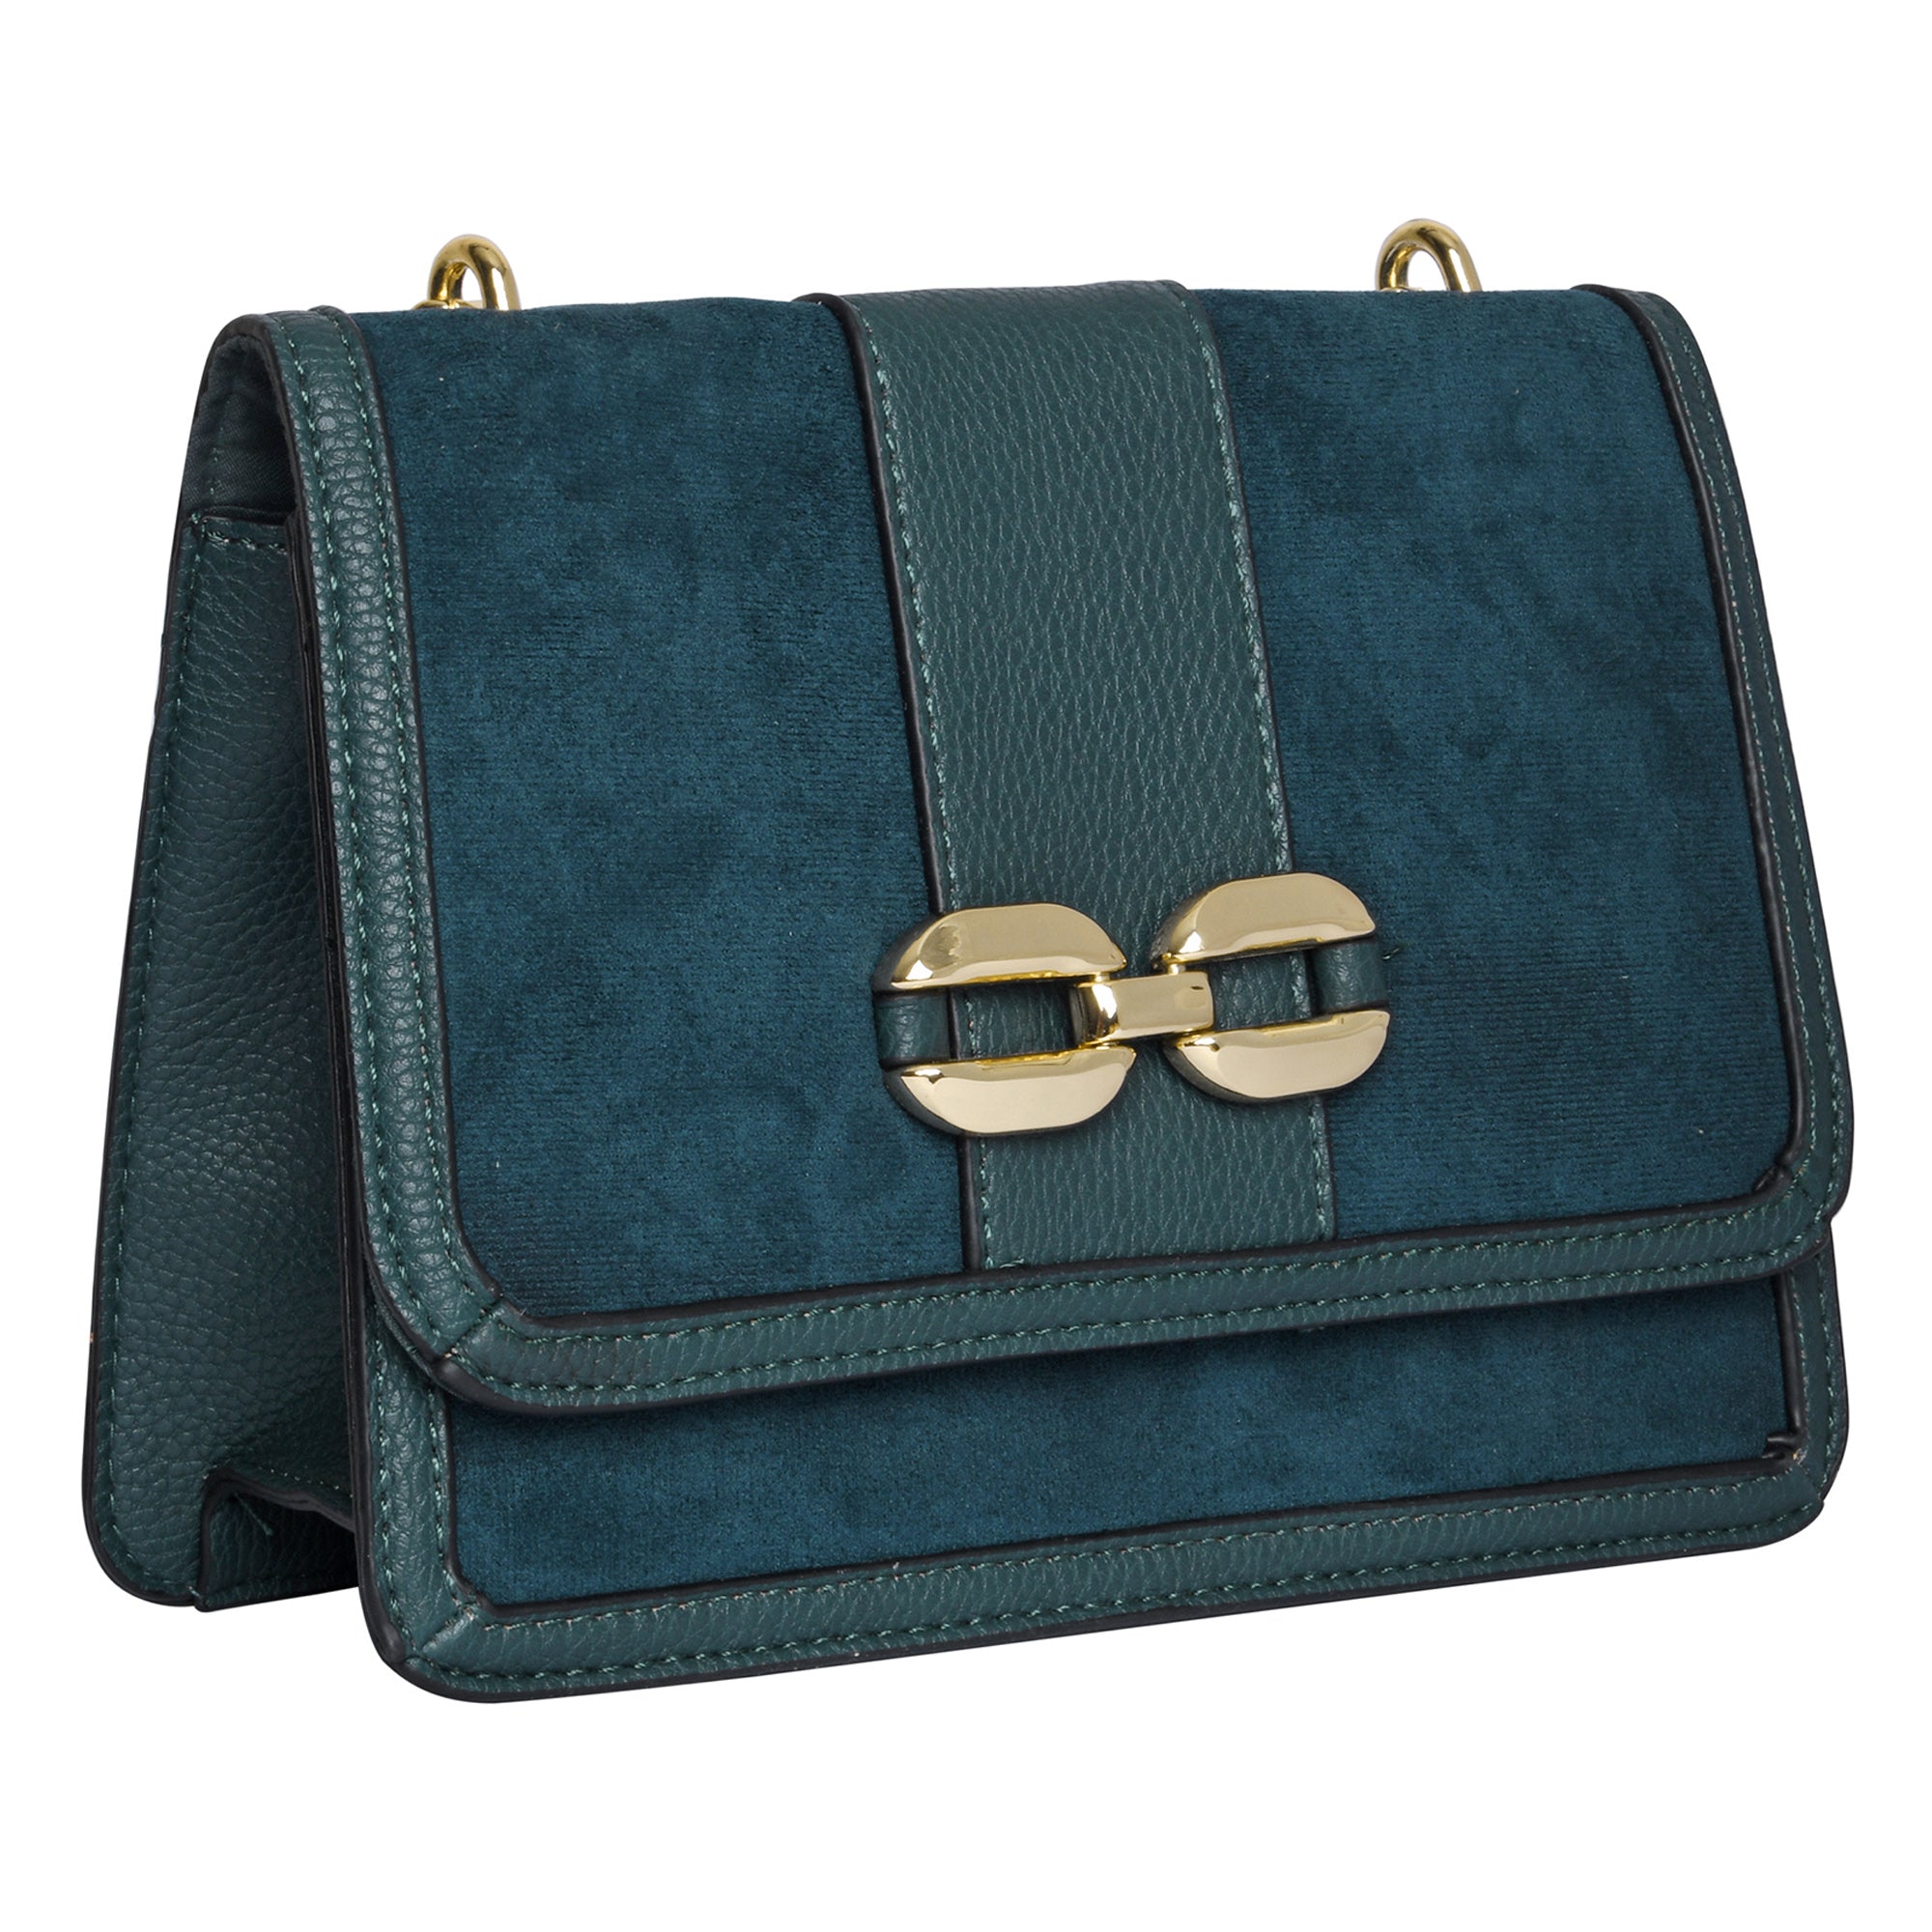 Accessorize London Women's Faux Leather Blue Suedette Chain Sling Bag